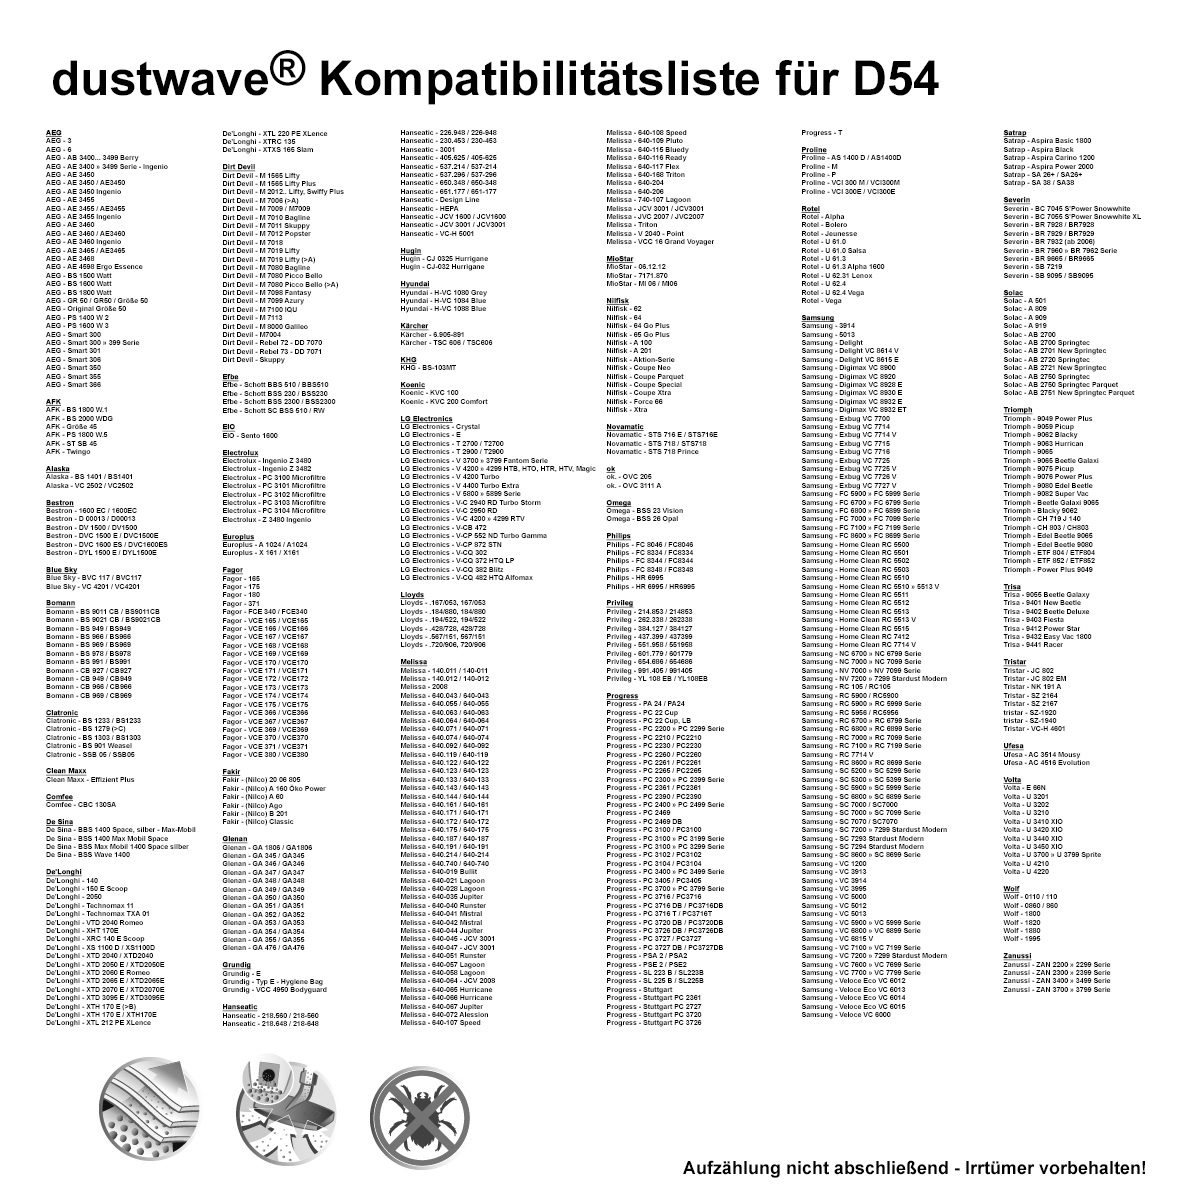 Dustwave® 10 Staubsaugerbeutel für Bravo B 4521 Mouse - hocheffizient, mehrlagiges Mikrovlies mit Hygieneverschluss - Made in Germany